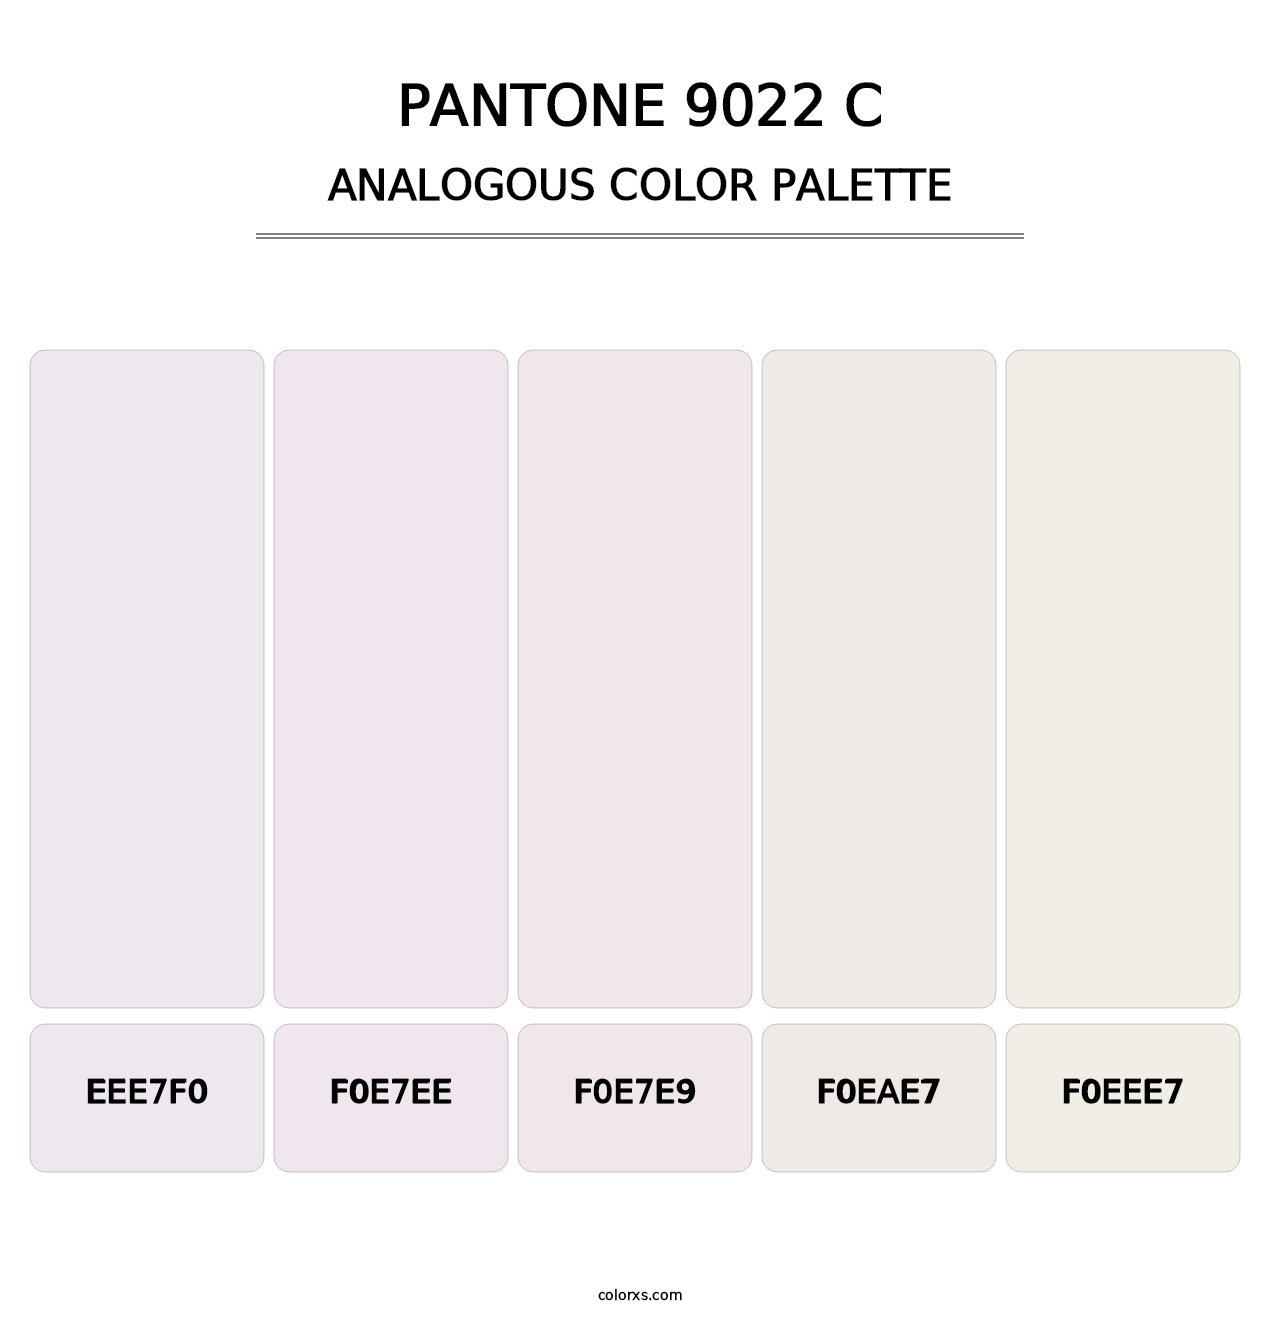 PANTONE 9022 C - Analogous Color Palette